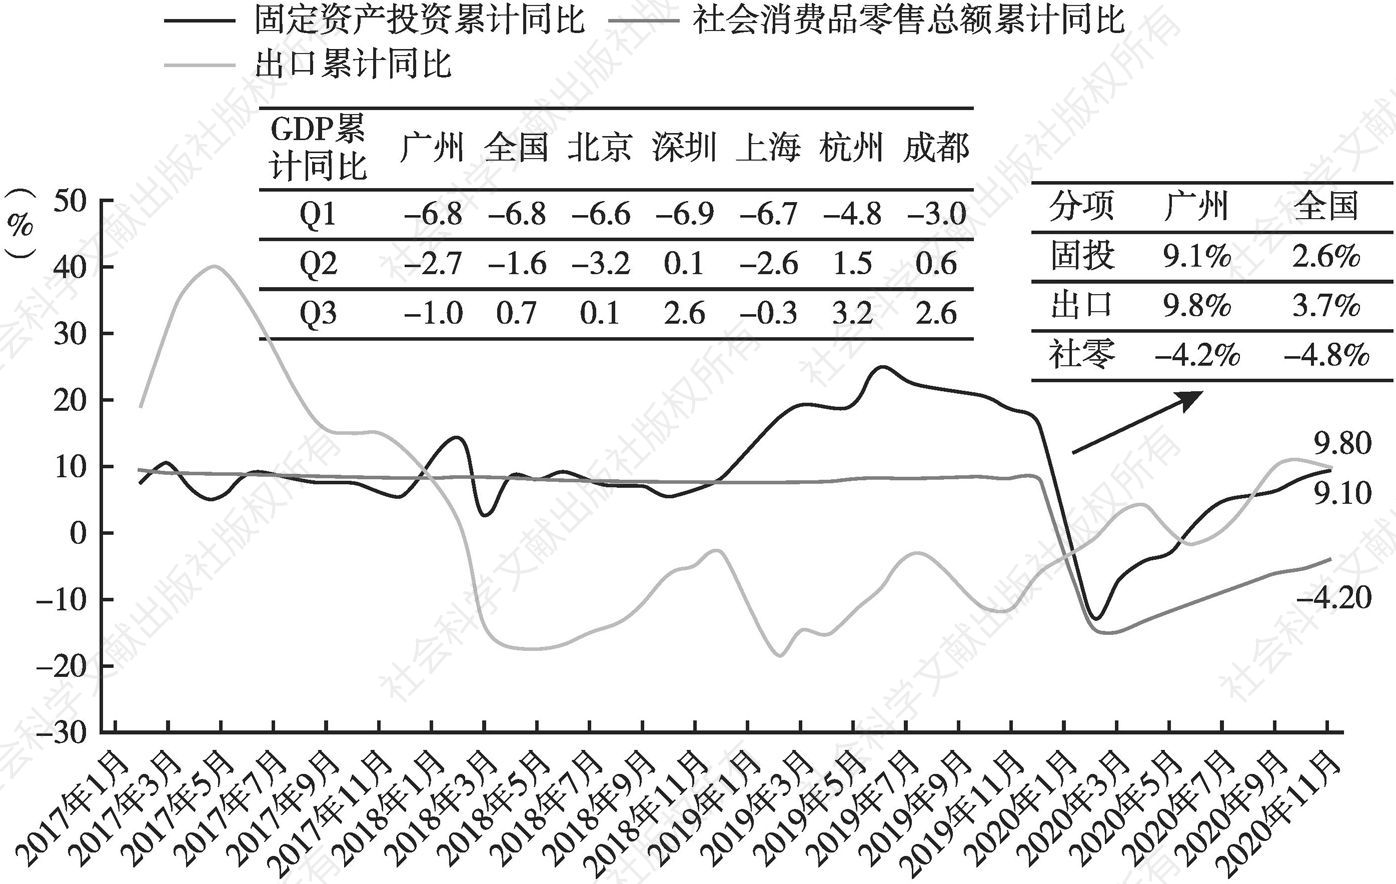 图2 广州累计GDP增速水平